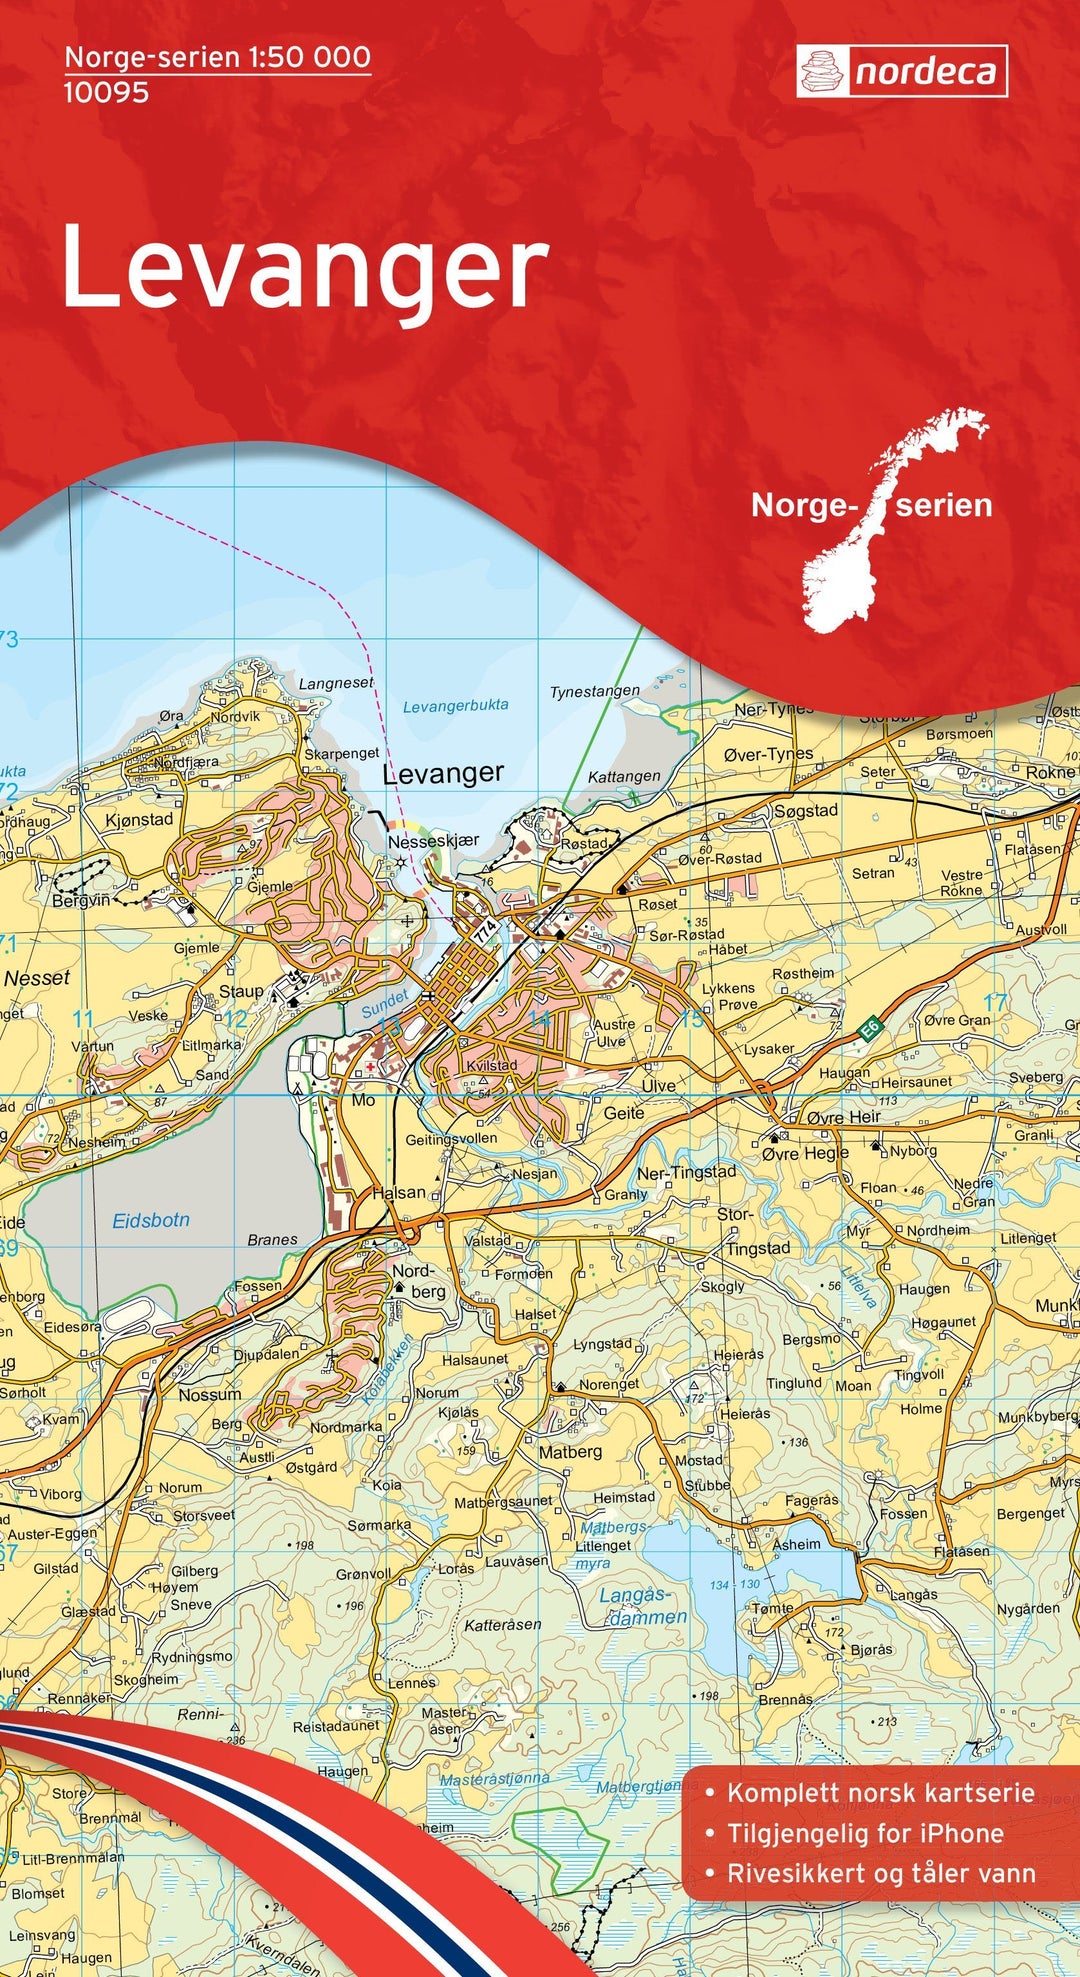 Carte de randonnée n° 10095 - Levanger (Norvège) | Nordeca - Norge-serien carte pliée Nordeca 